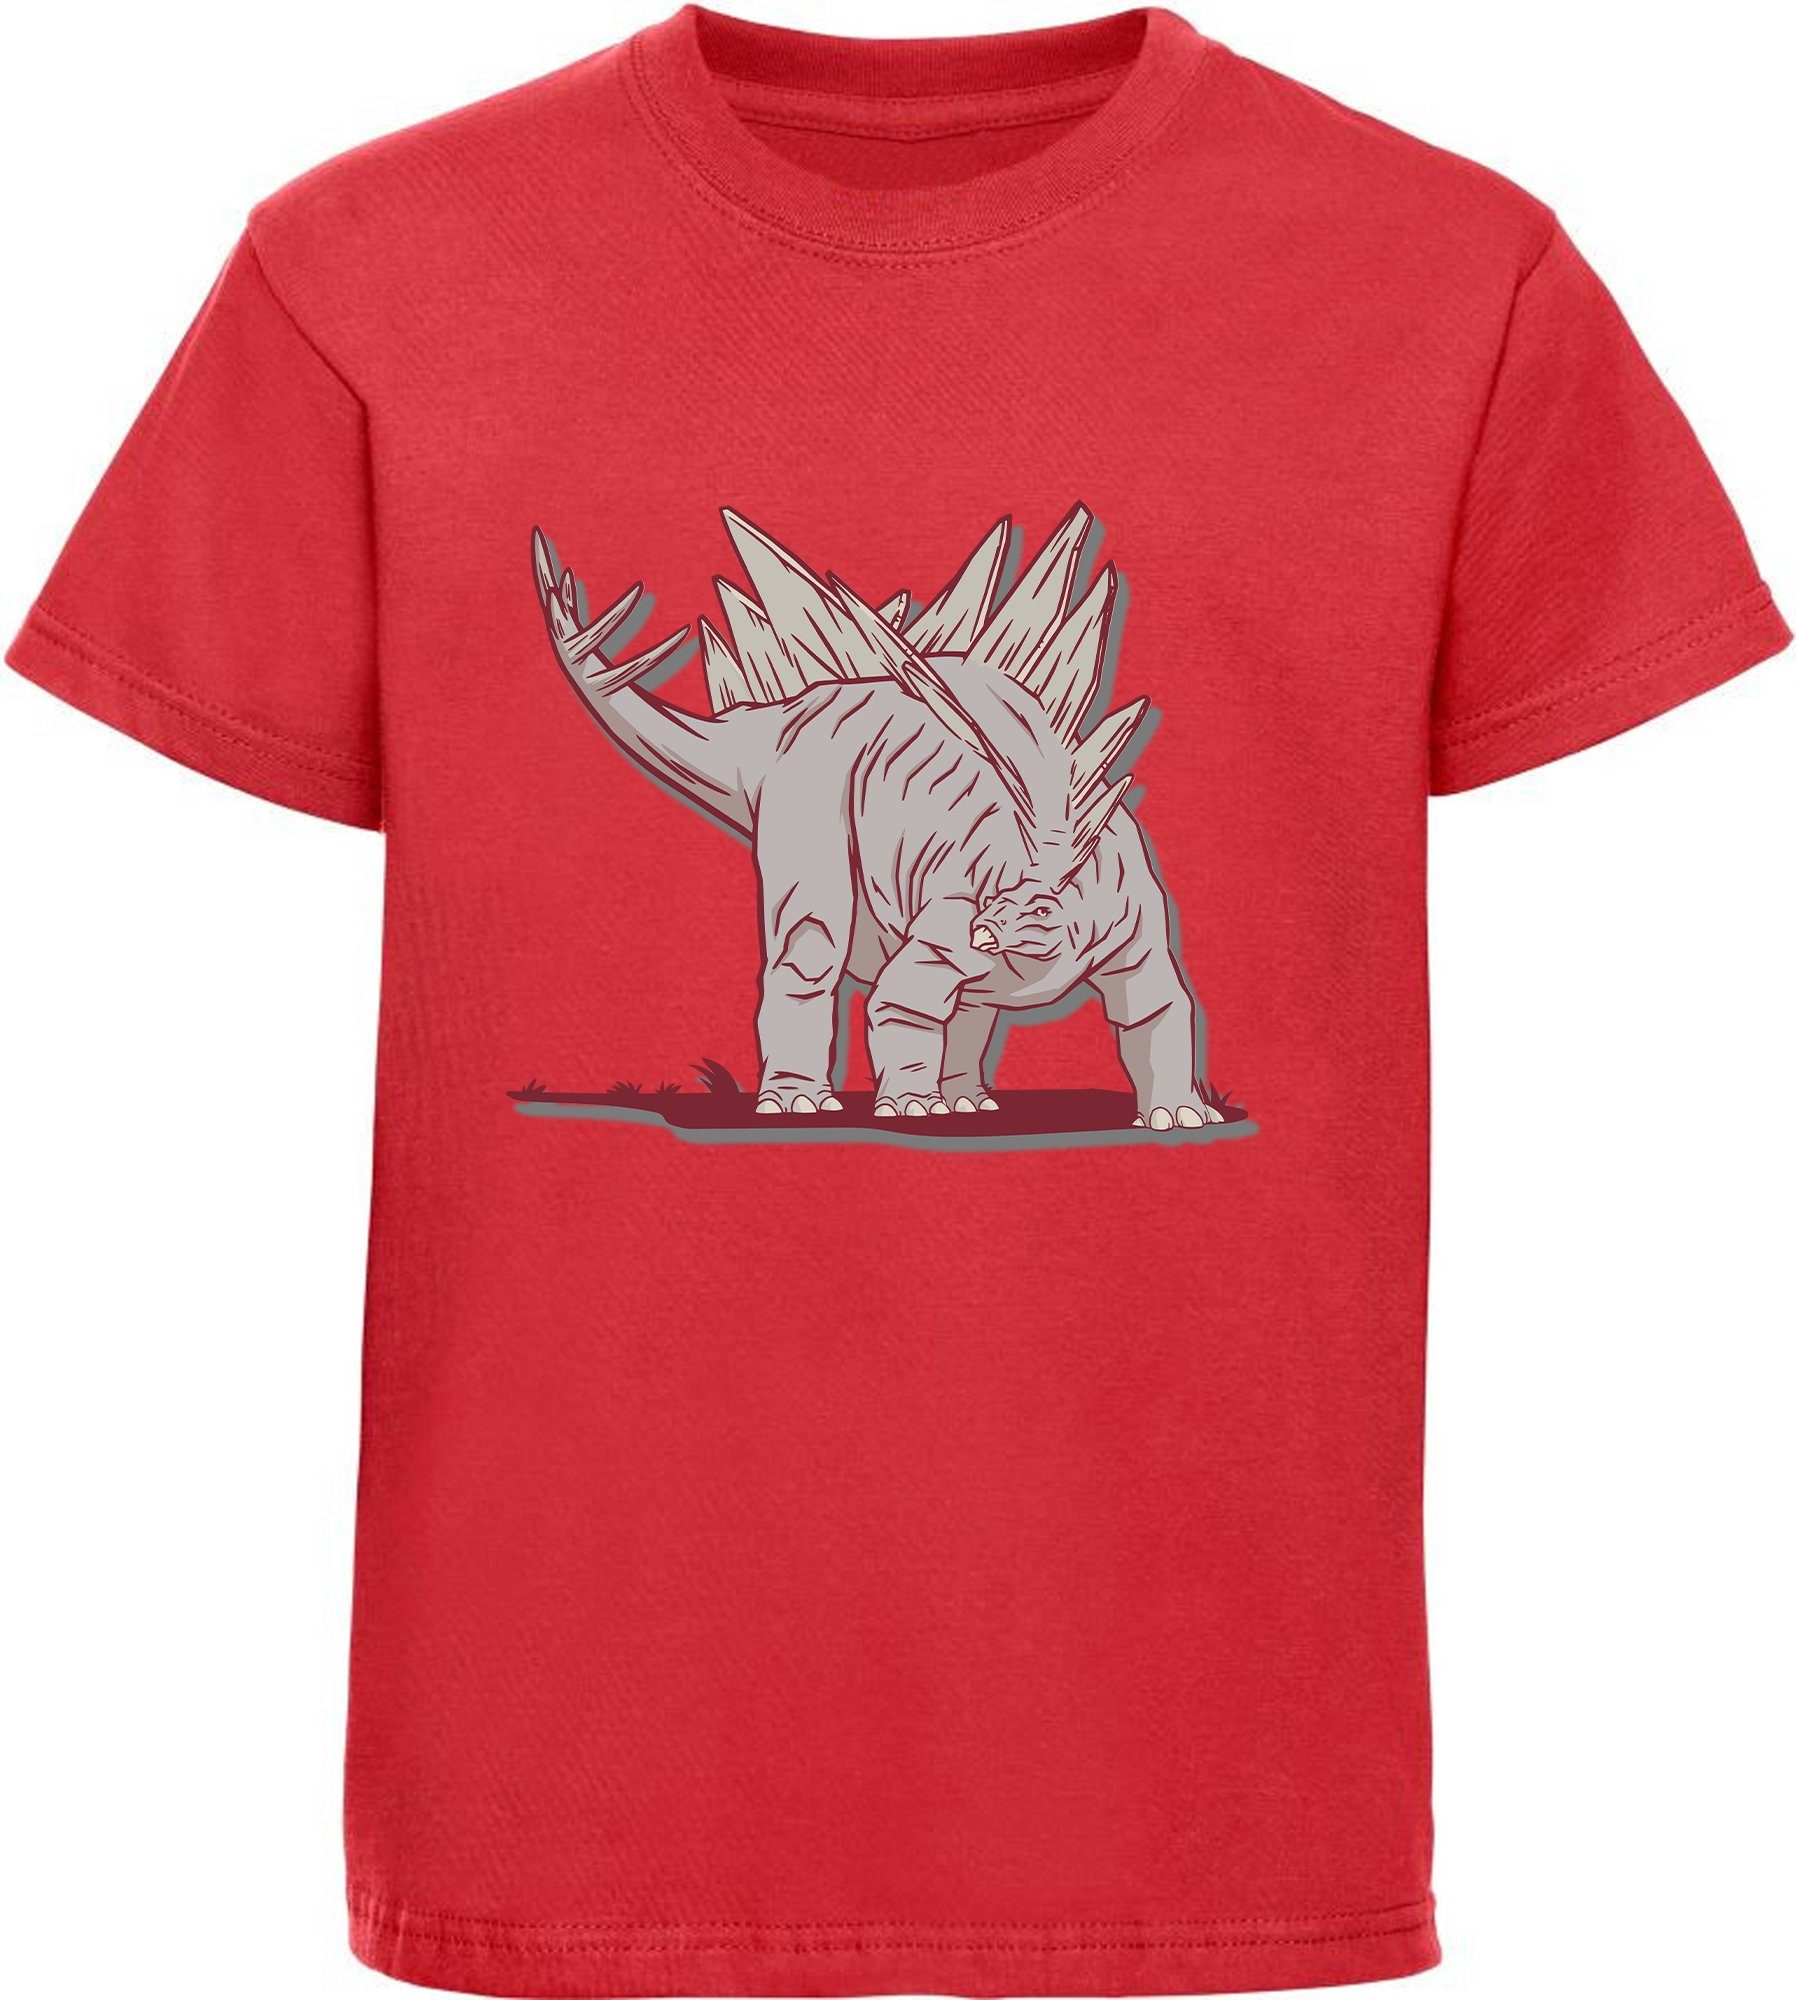 MyDesign24 Print-Shirt bedrucktes Kinder T-Shirt mit Stegosaurus Baumwollshirt mit Dino, schwarz, weiß, rot, blau, i88 | T-Shirts